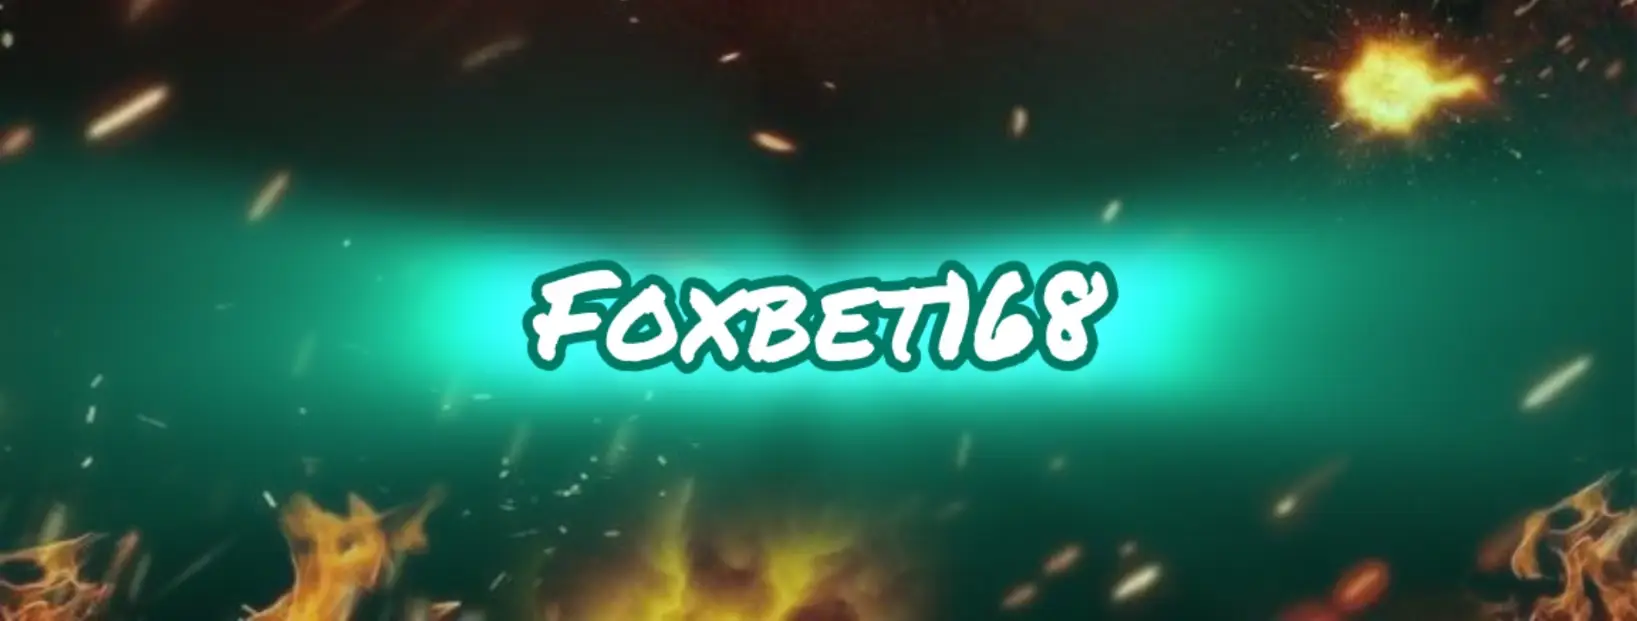 สนุกสุดๆ กับเกมสล็อตที่หลากหลายที่ foxbet168 ตอบโจทย์ความสนุกสุดใจของคุณ!